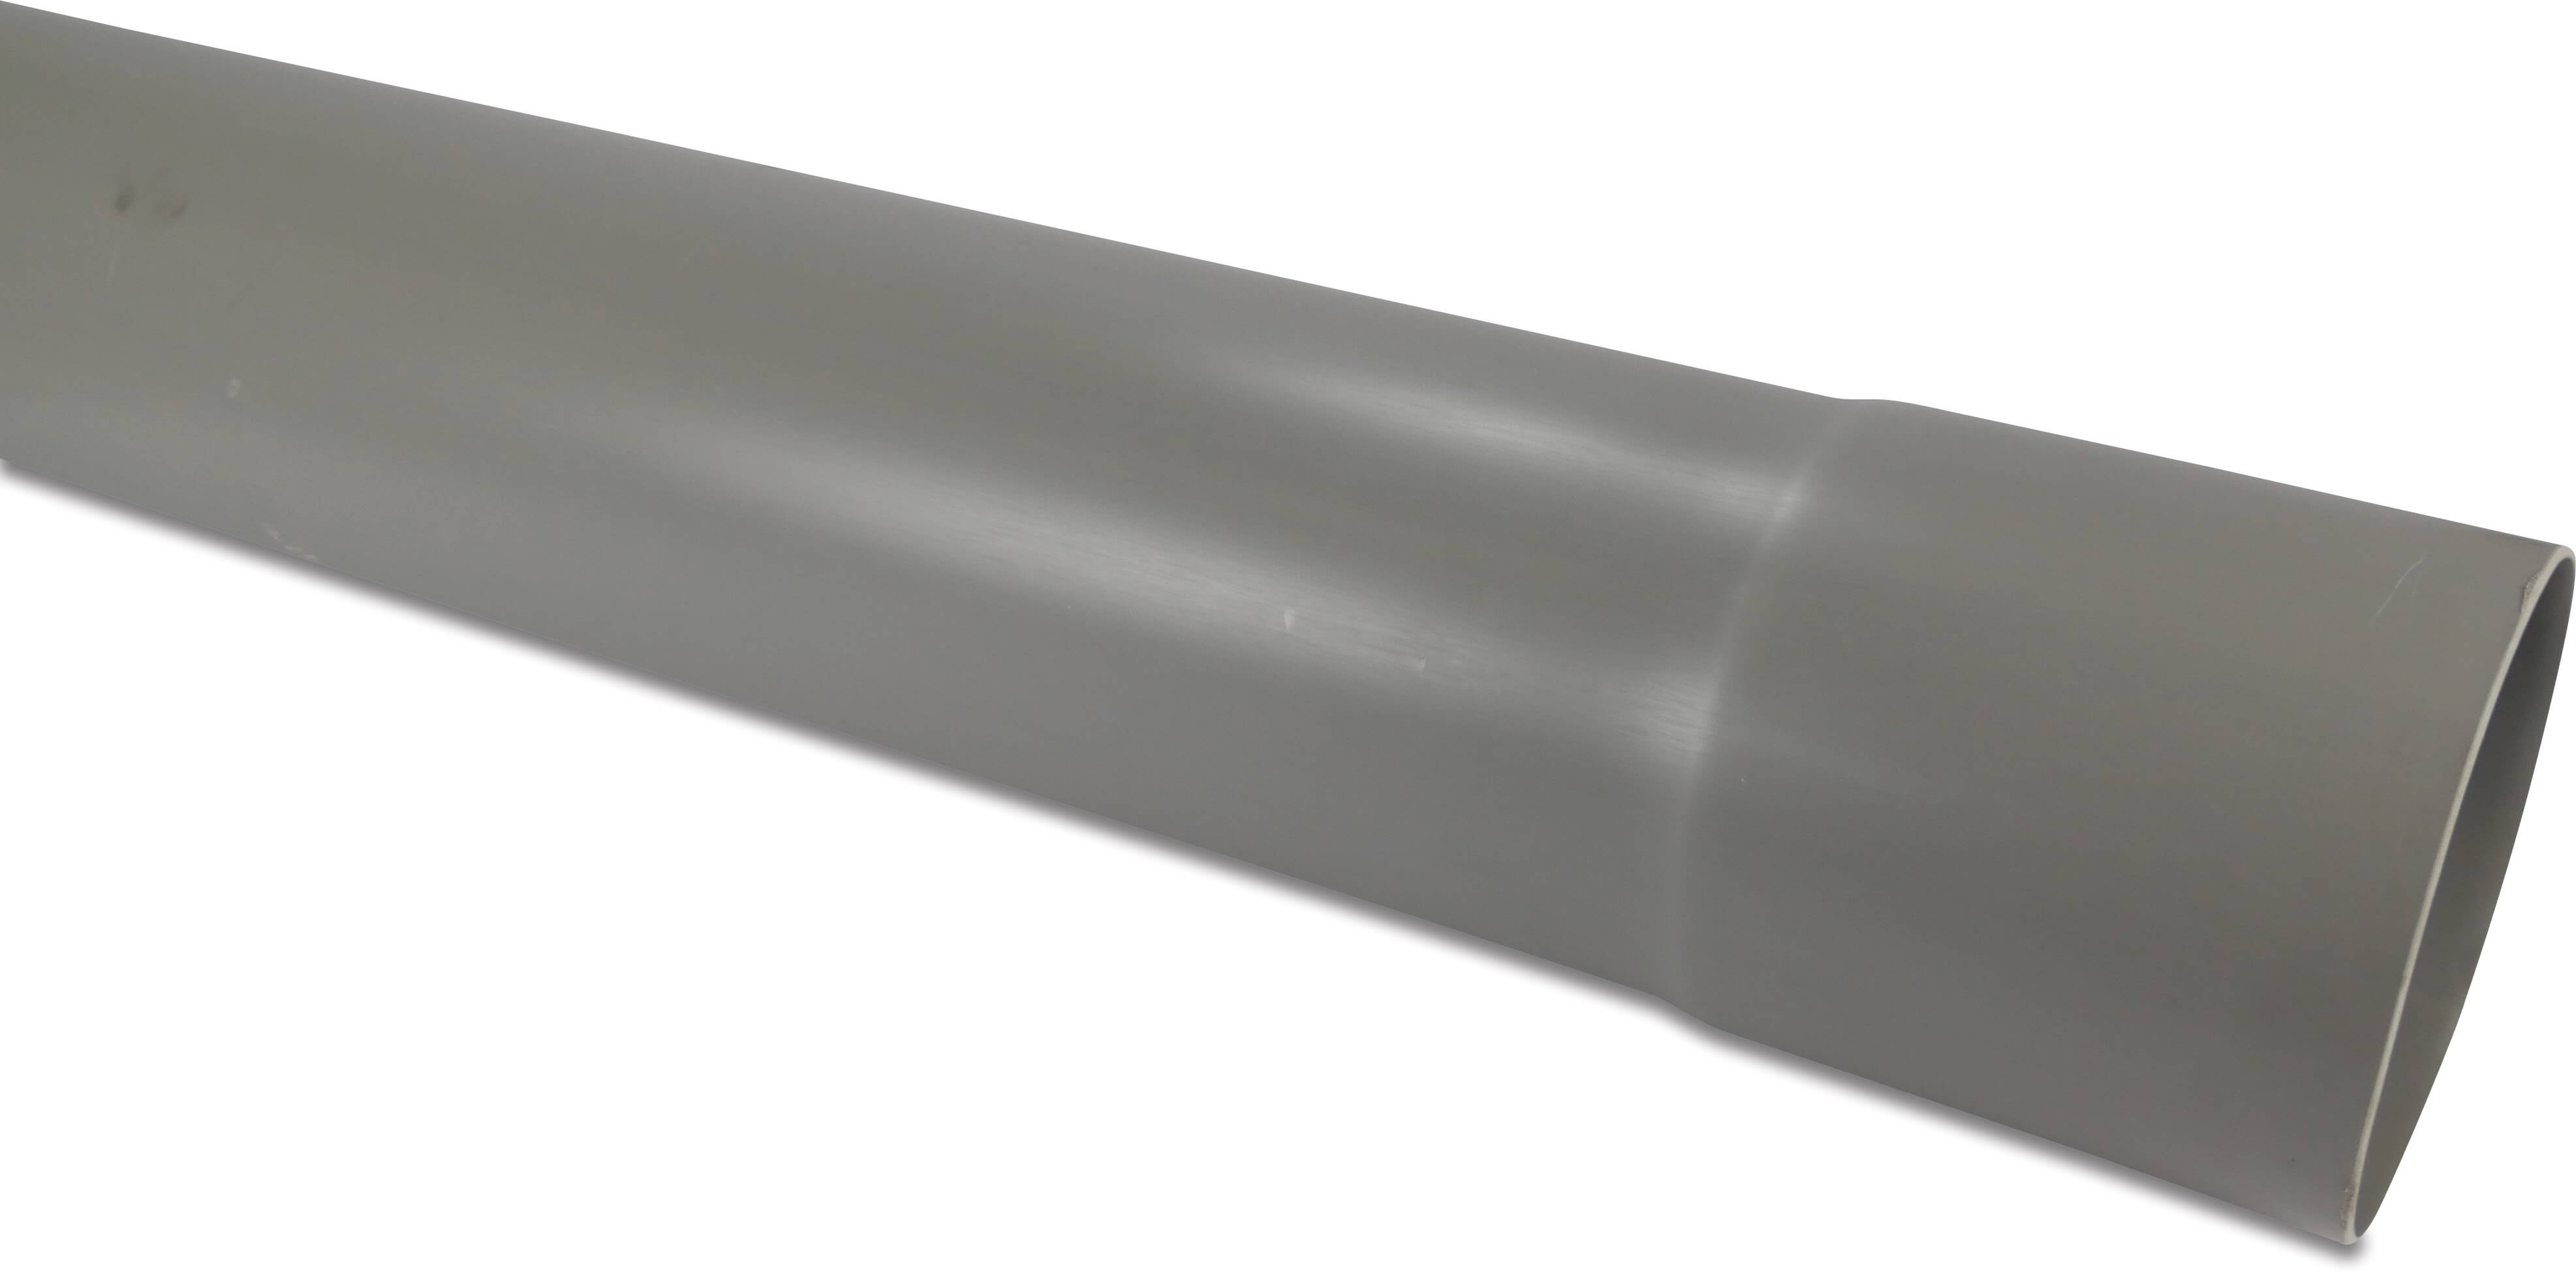 REWA Rohr PVC-U 60 mm x 1,5 mm Klebemuffe x Glatt Grau 4m